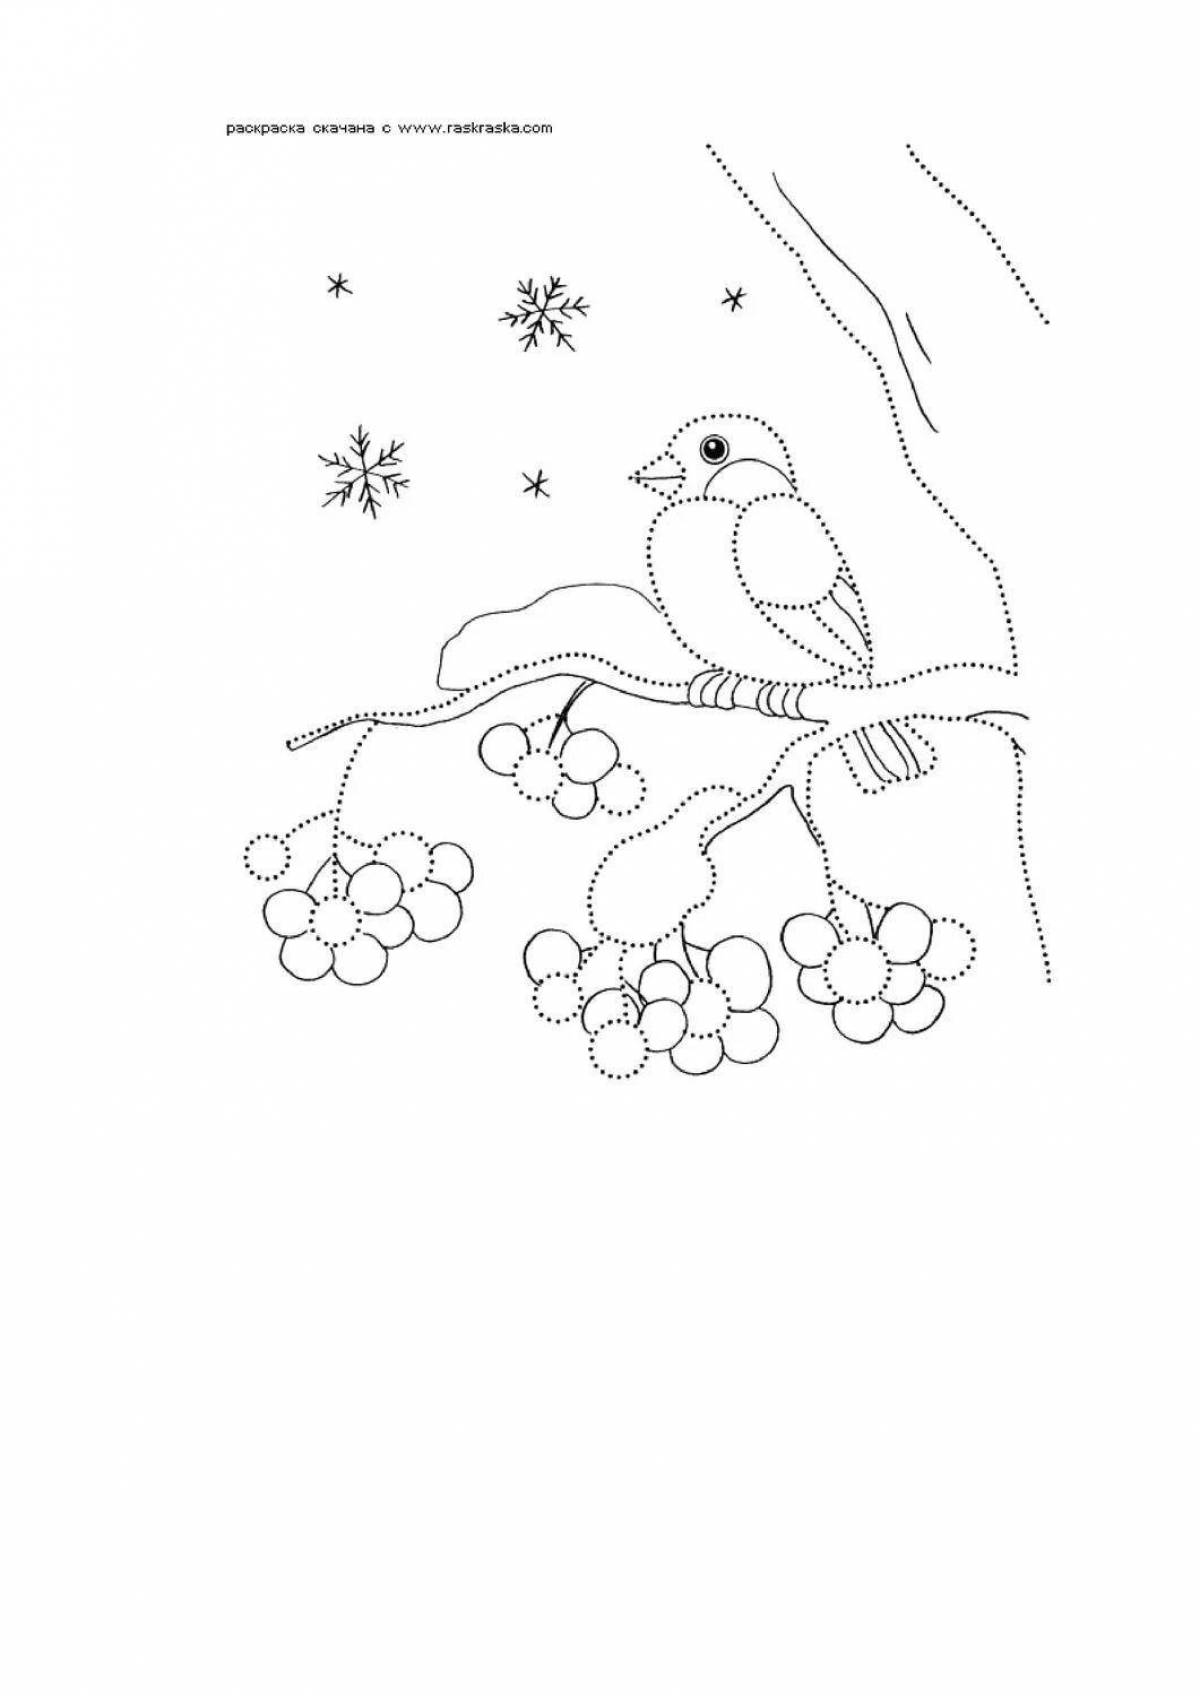 Пронзительный рисунок снегиря на ветке рябины